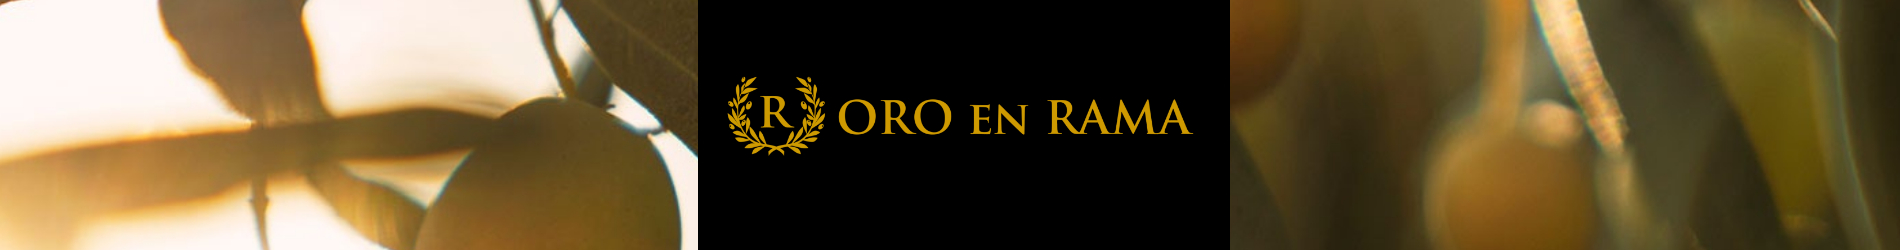 banner_oro_en_rama